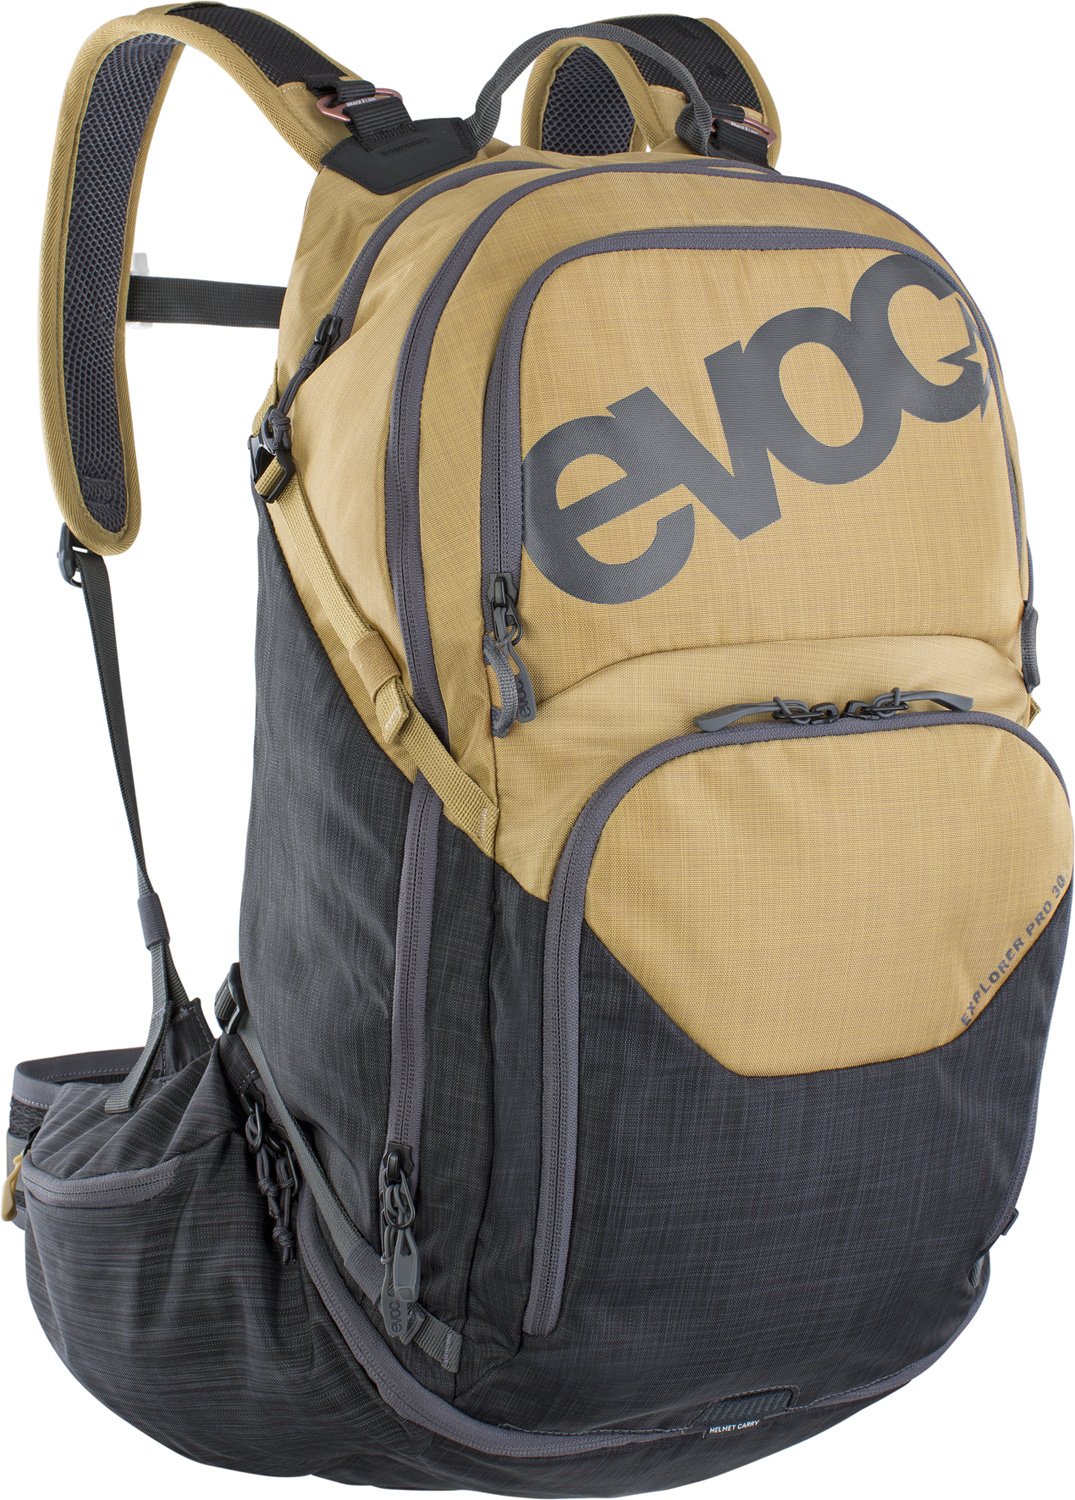 EVOC Explorer Pro 30 L